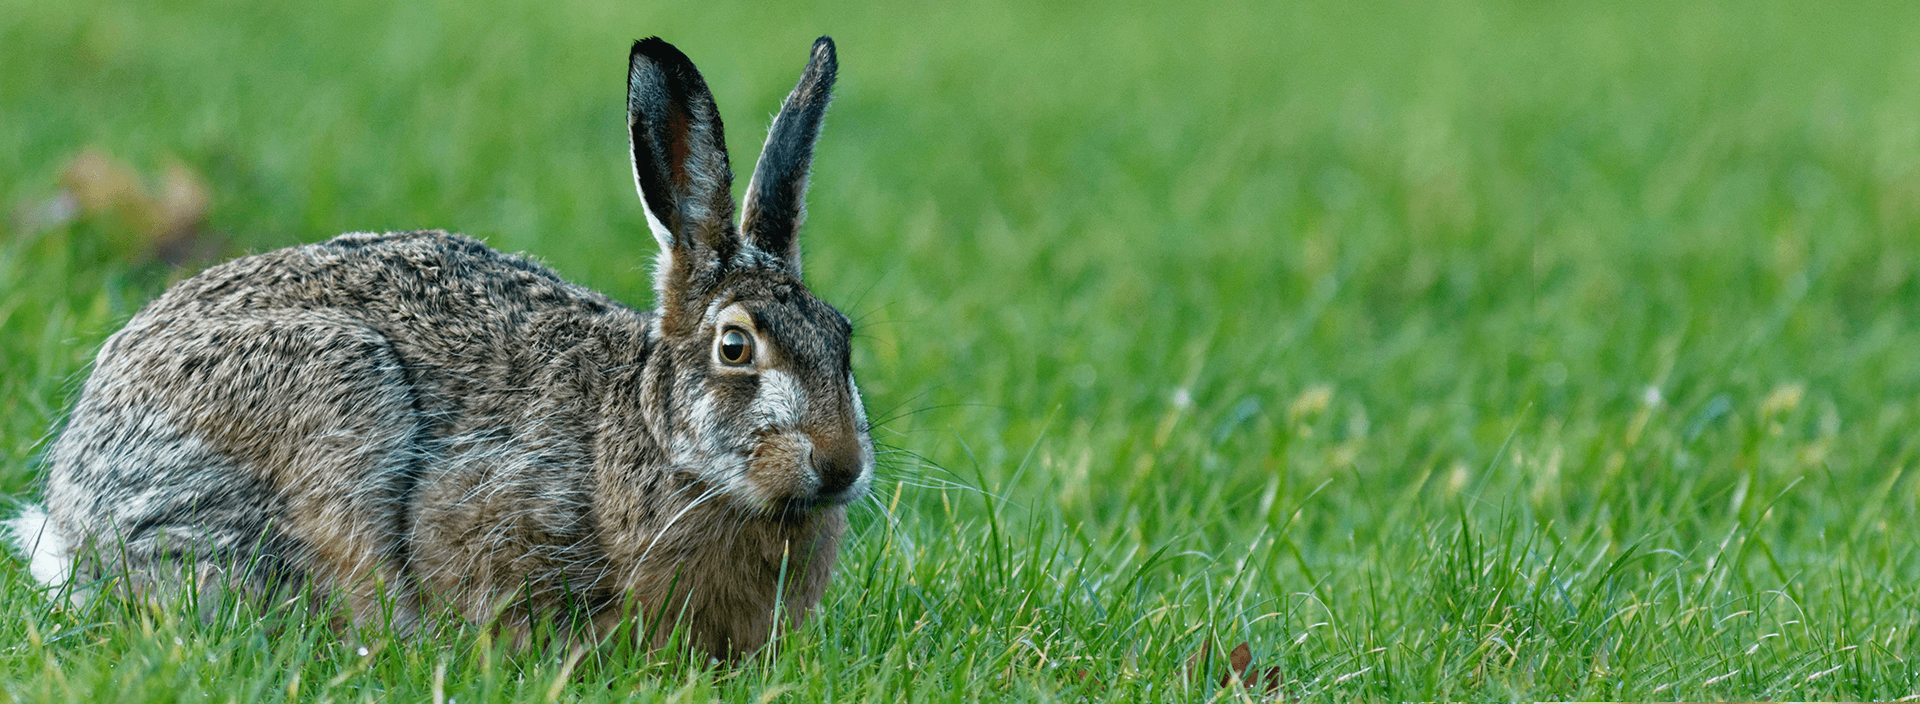 Каким ушным заболеваниям подвергаются кролики